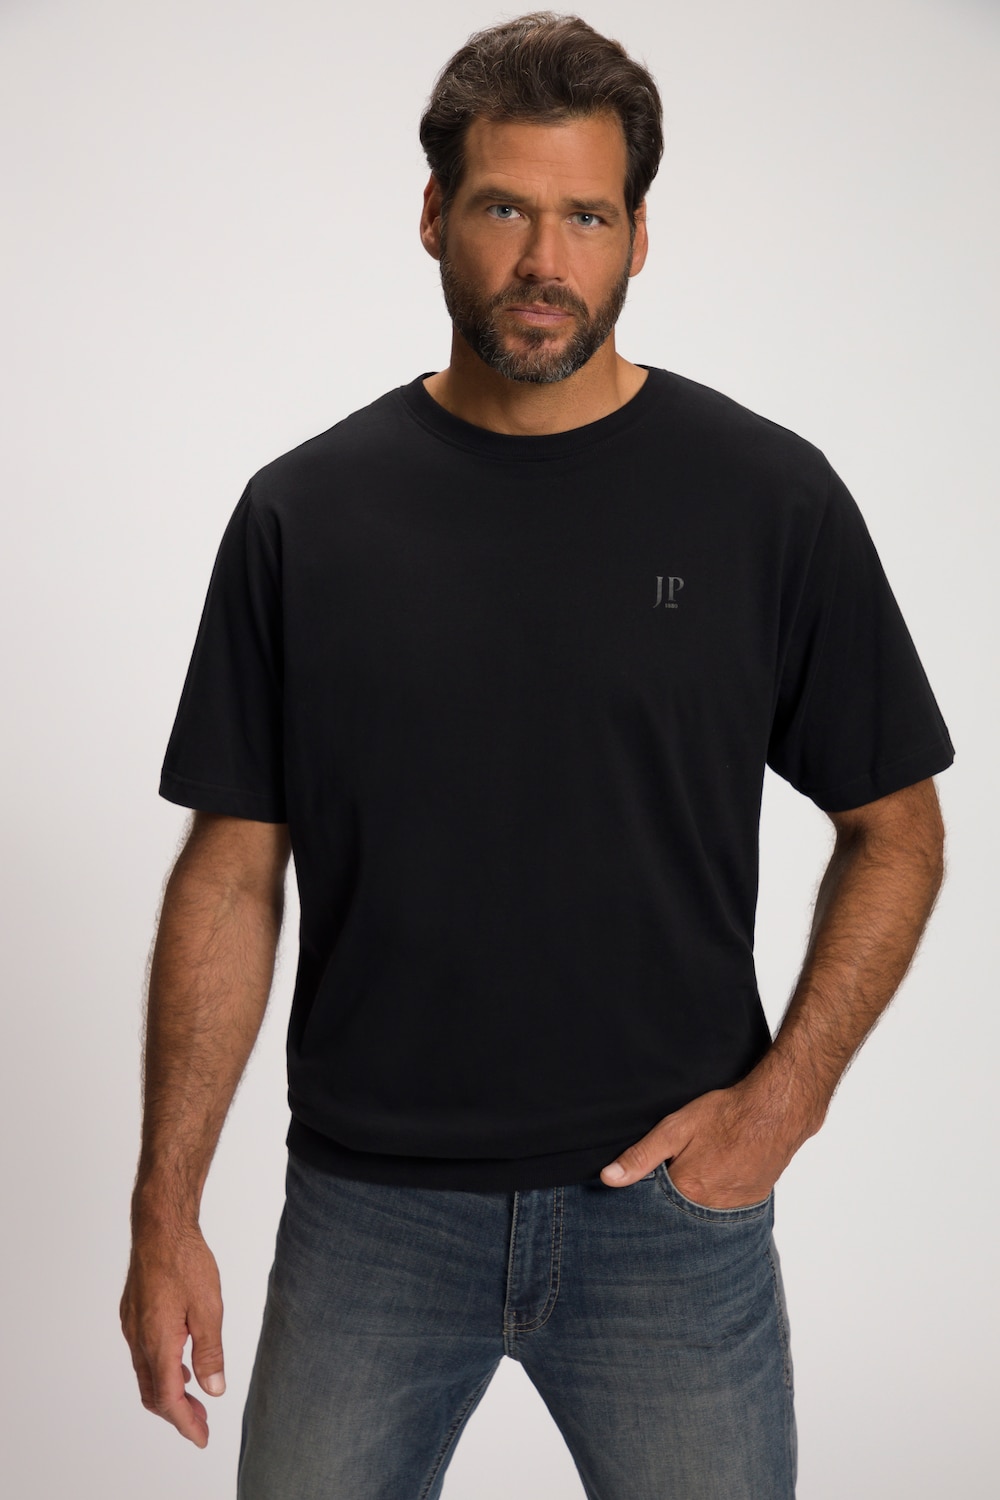 Große Größen T-Shirt, Herren, schwarz, Größe: 8XL, Baumwolle, JP1880